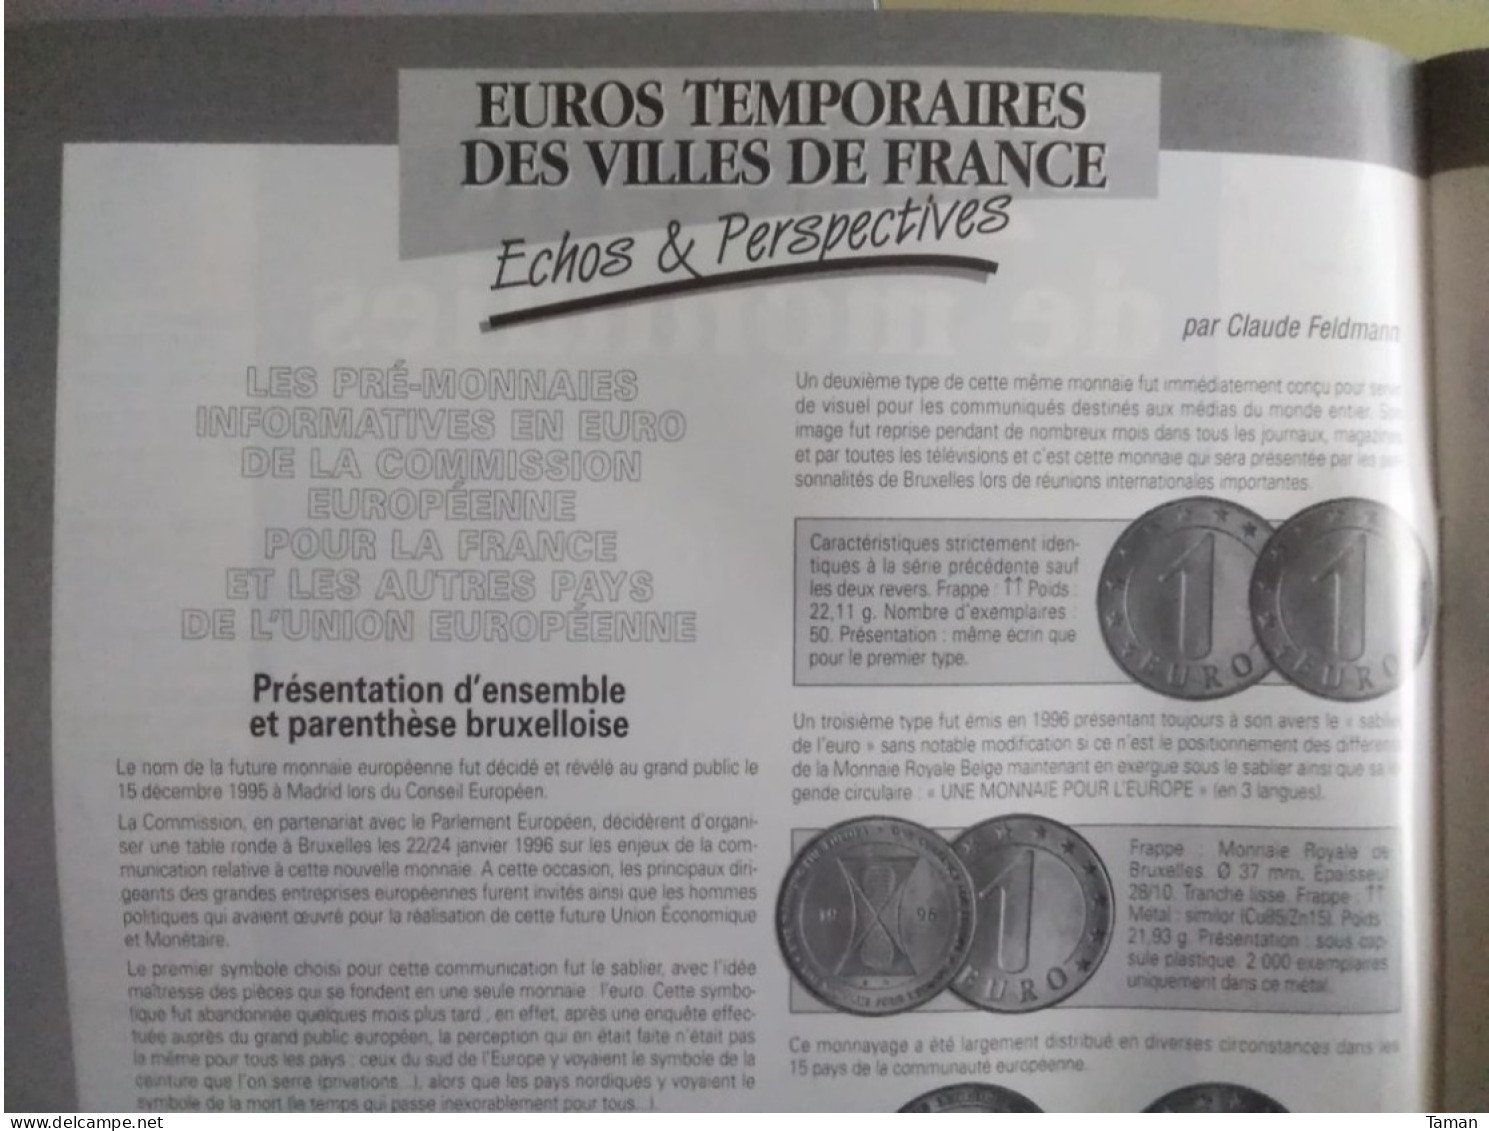 Numismatique & Change - Delacroix - Euros Temporaires - Louis XIV - Florin De Florence En Lorraine - Billets Paris 1871 - French